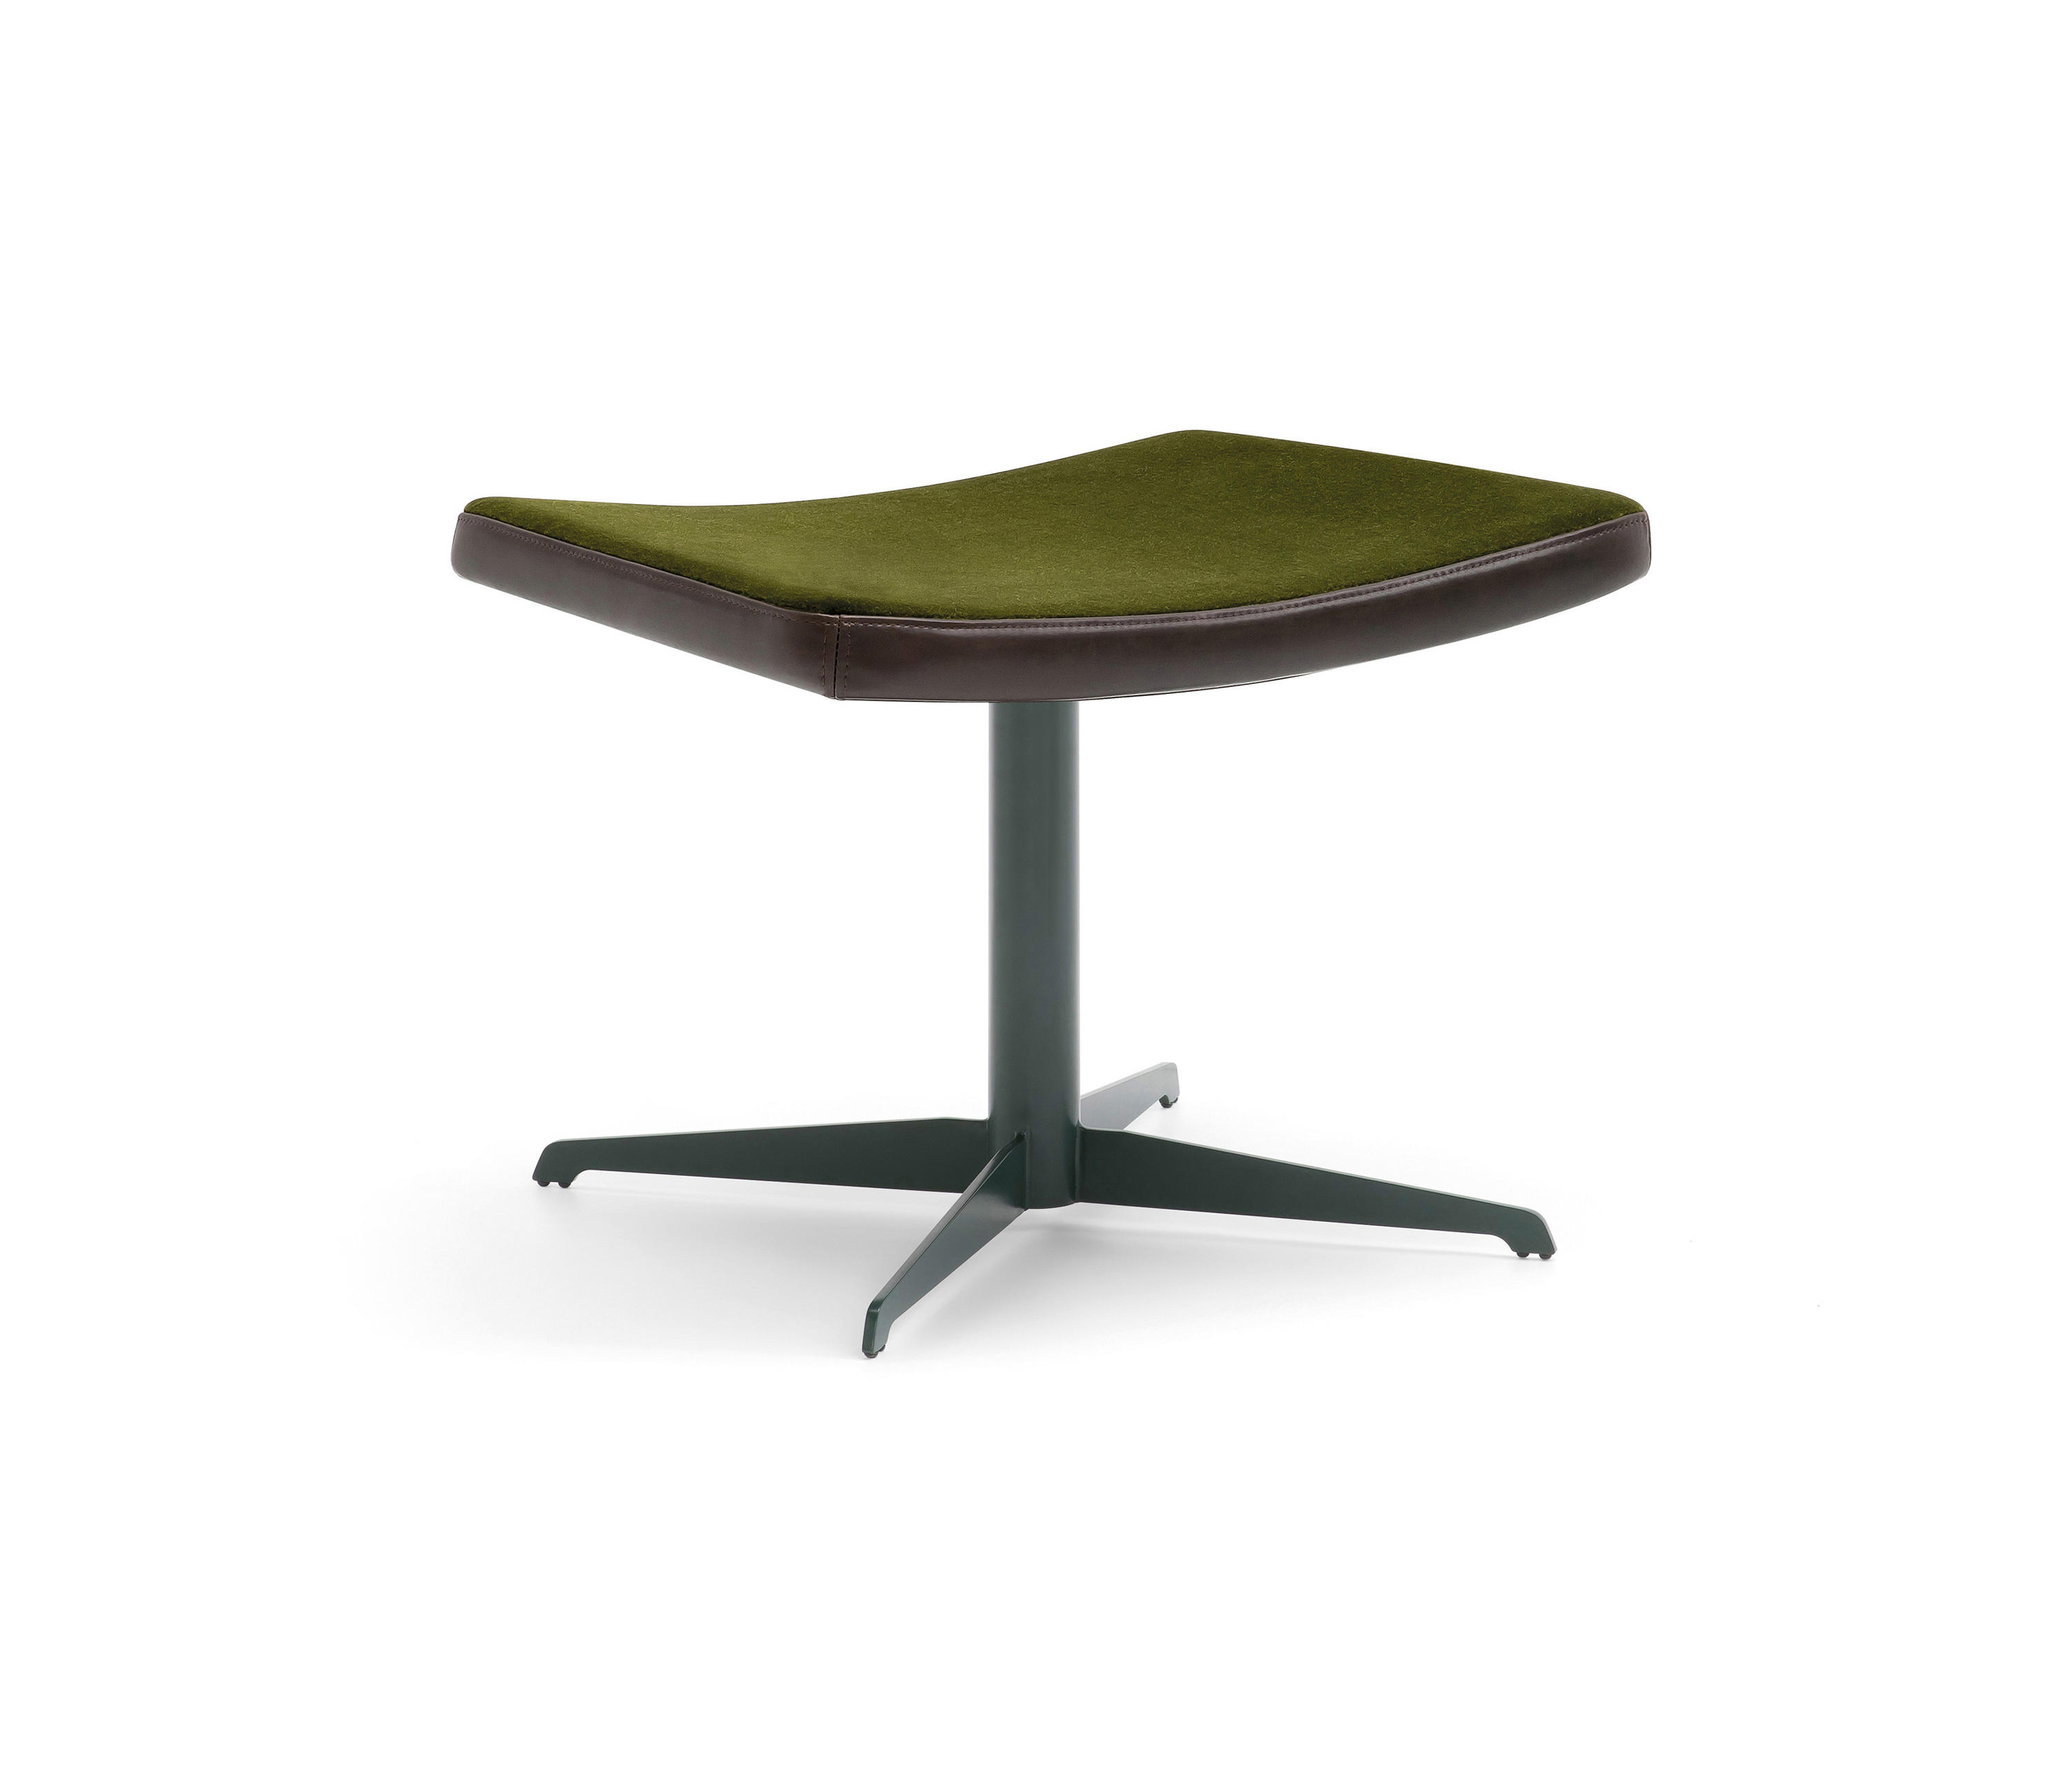 Otto-08 base 120 & designer furniture | Architonic